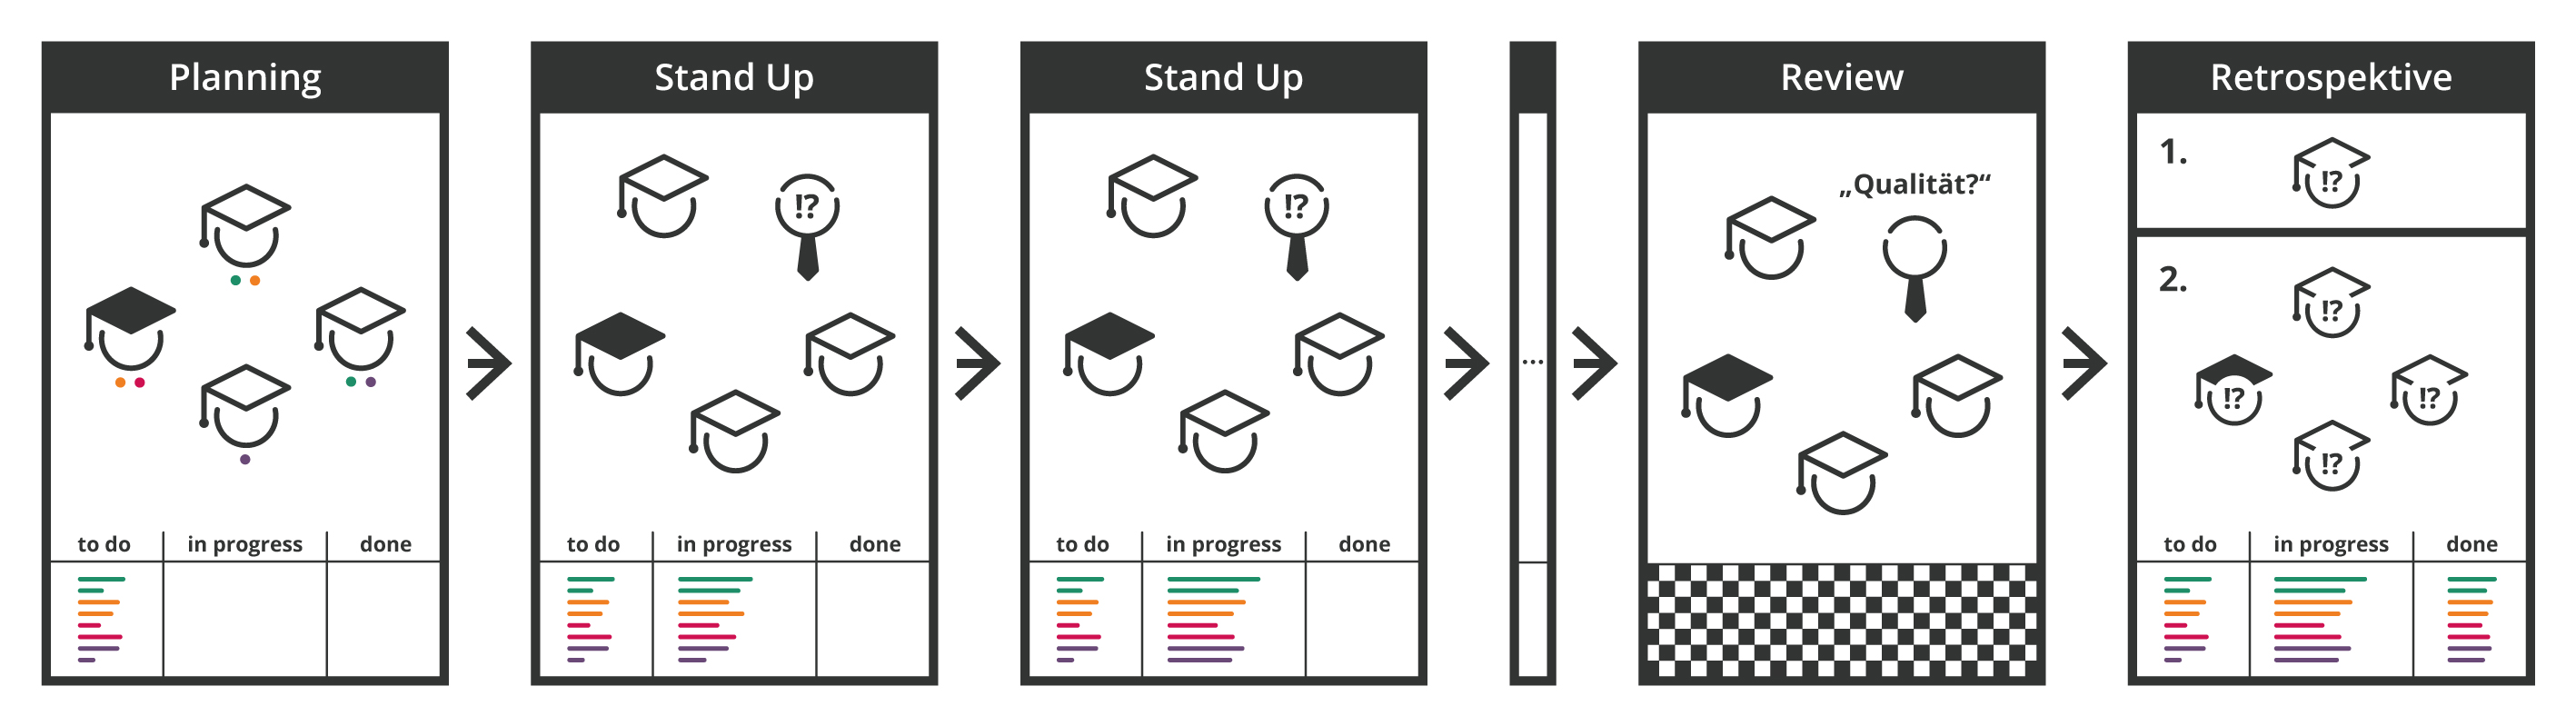 Übersichtsgraphik für die eduScrum Methode mit den Arbeitsschritten Planning, Stand Up, Stand Up, Review, Retrospektive